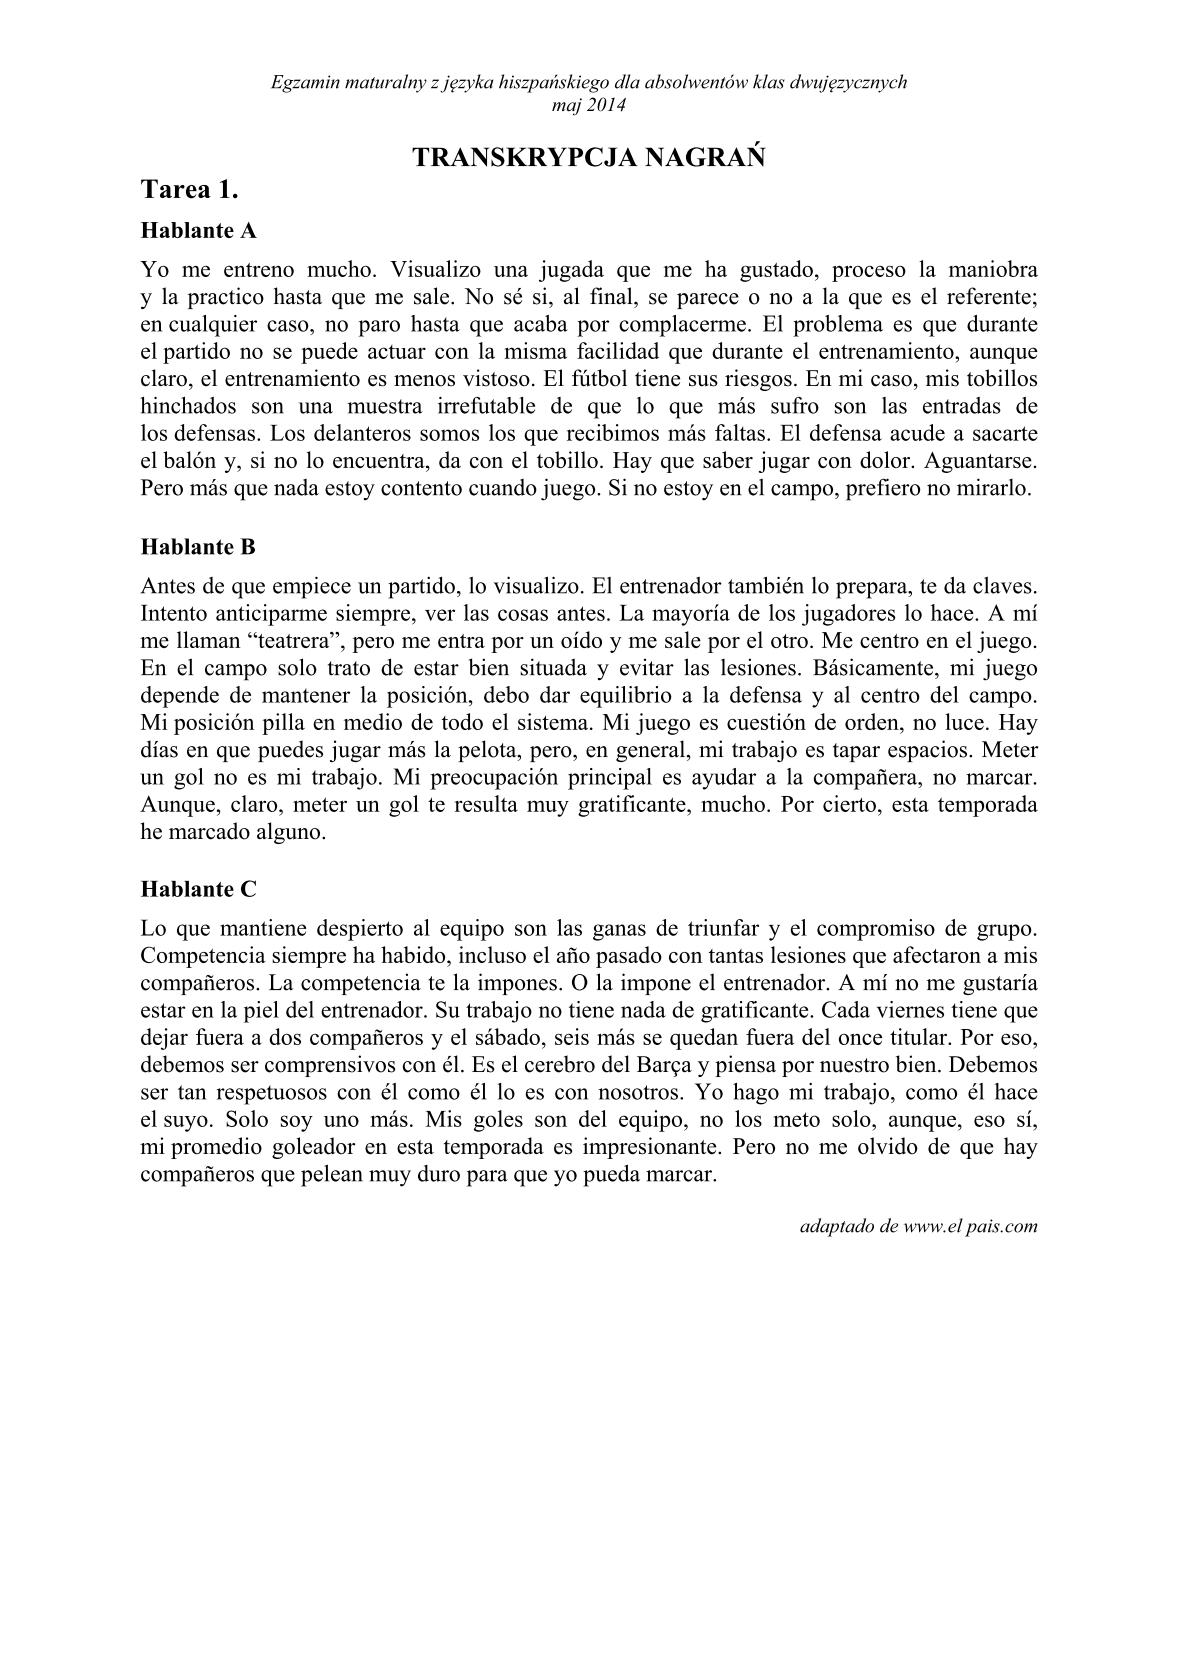 Transkrypcja-hiszpanski-dla-absolwentow-klas-dwujezycznych-matura-2014-str.1